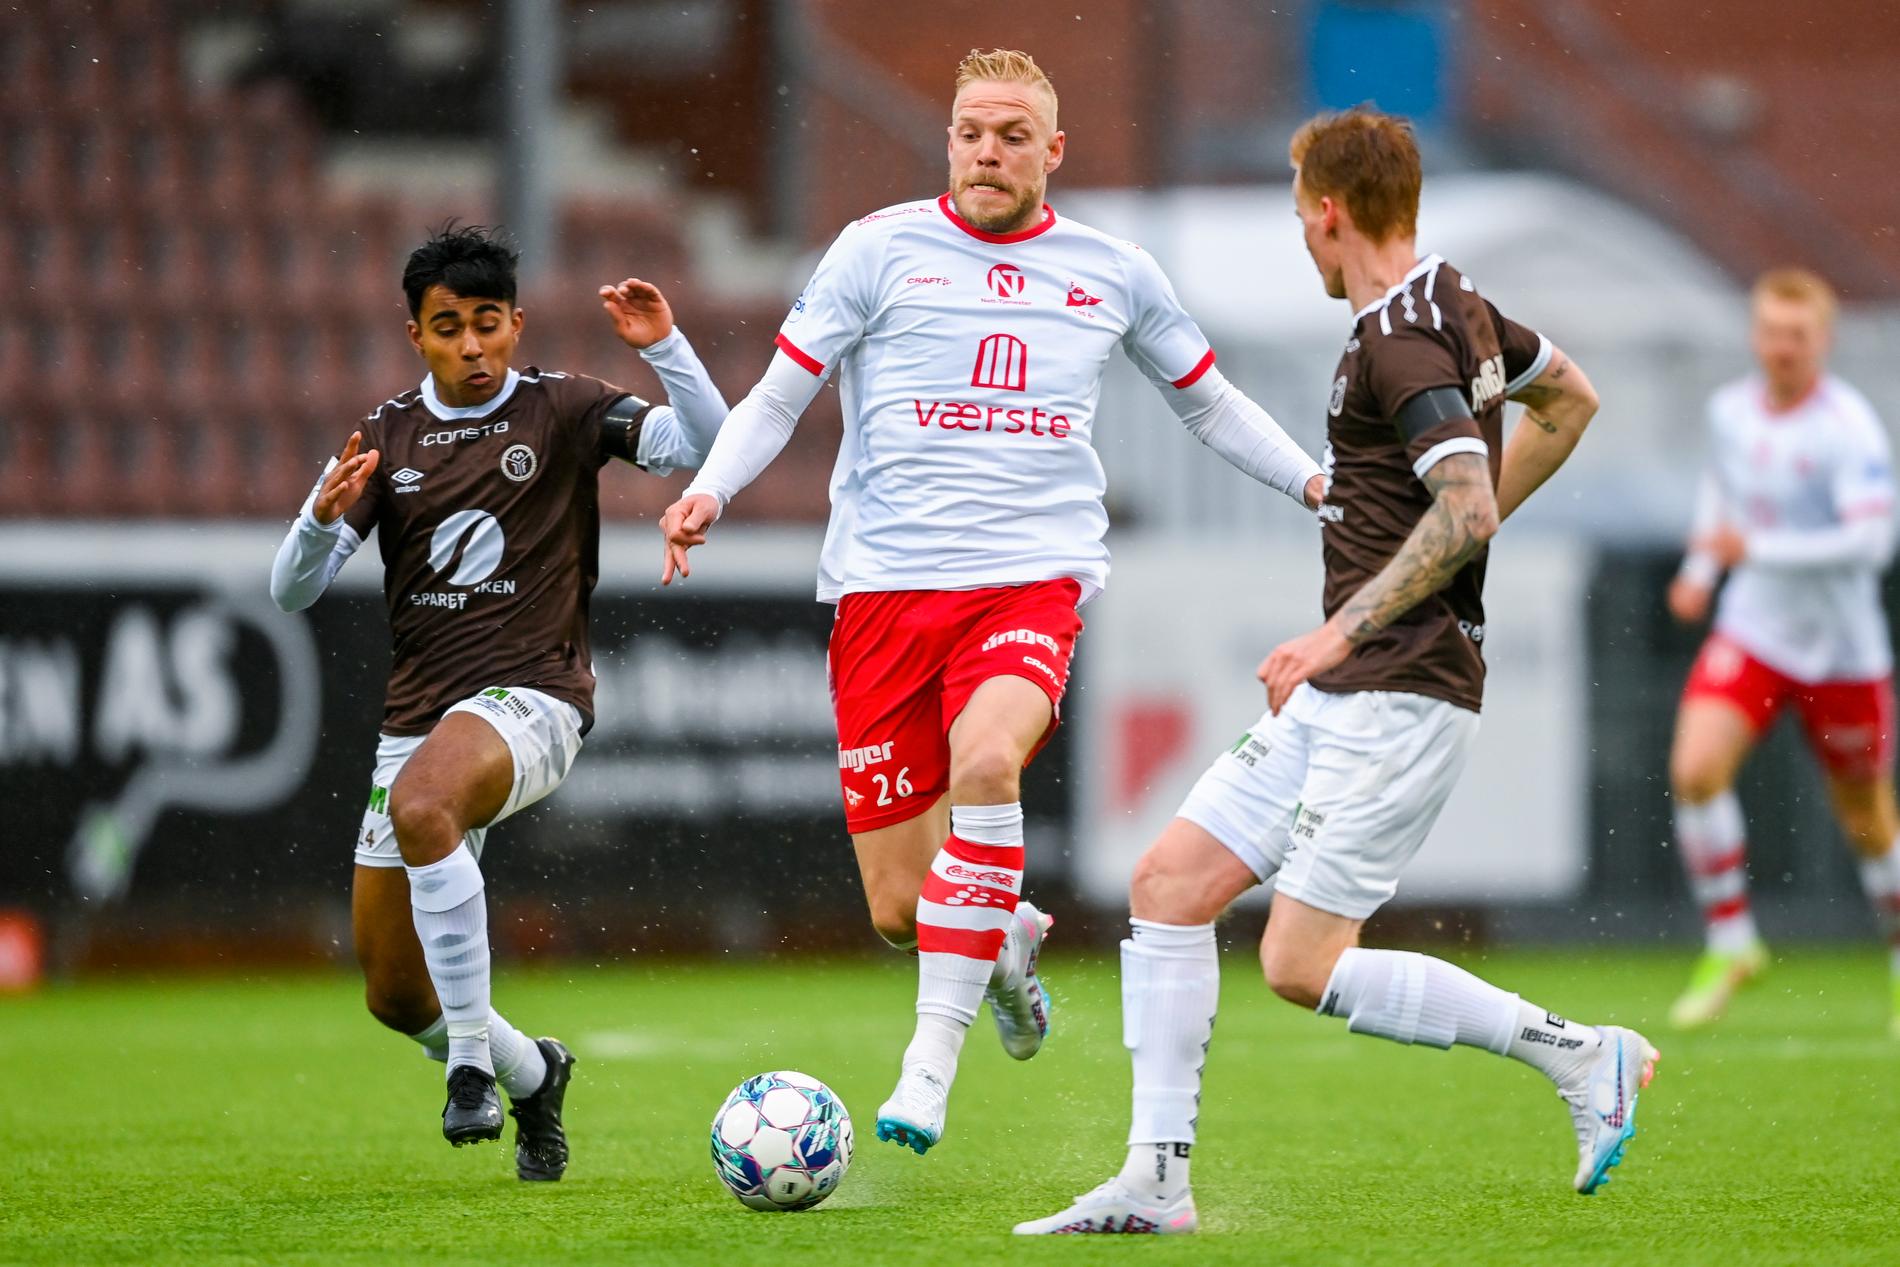 Nielsen pinned more FFK cheers – in-form goalkeeper Mjøndalen had to concede